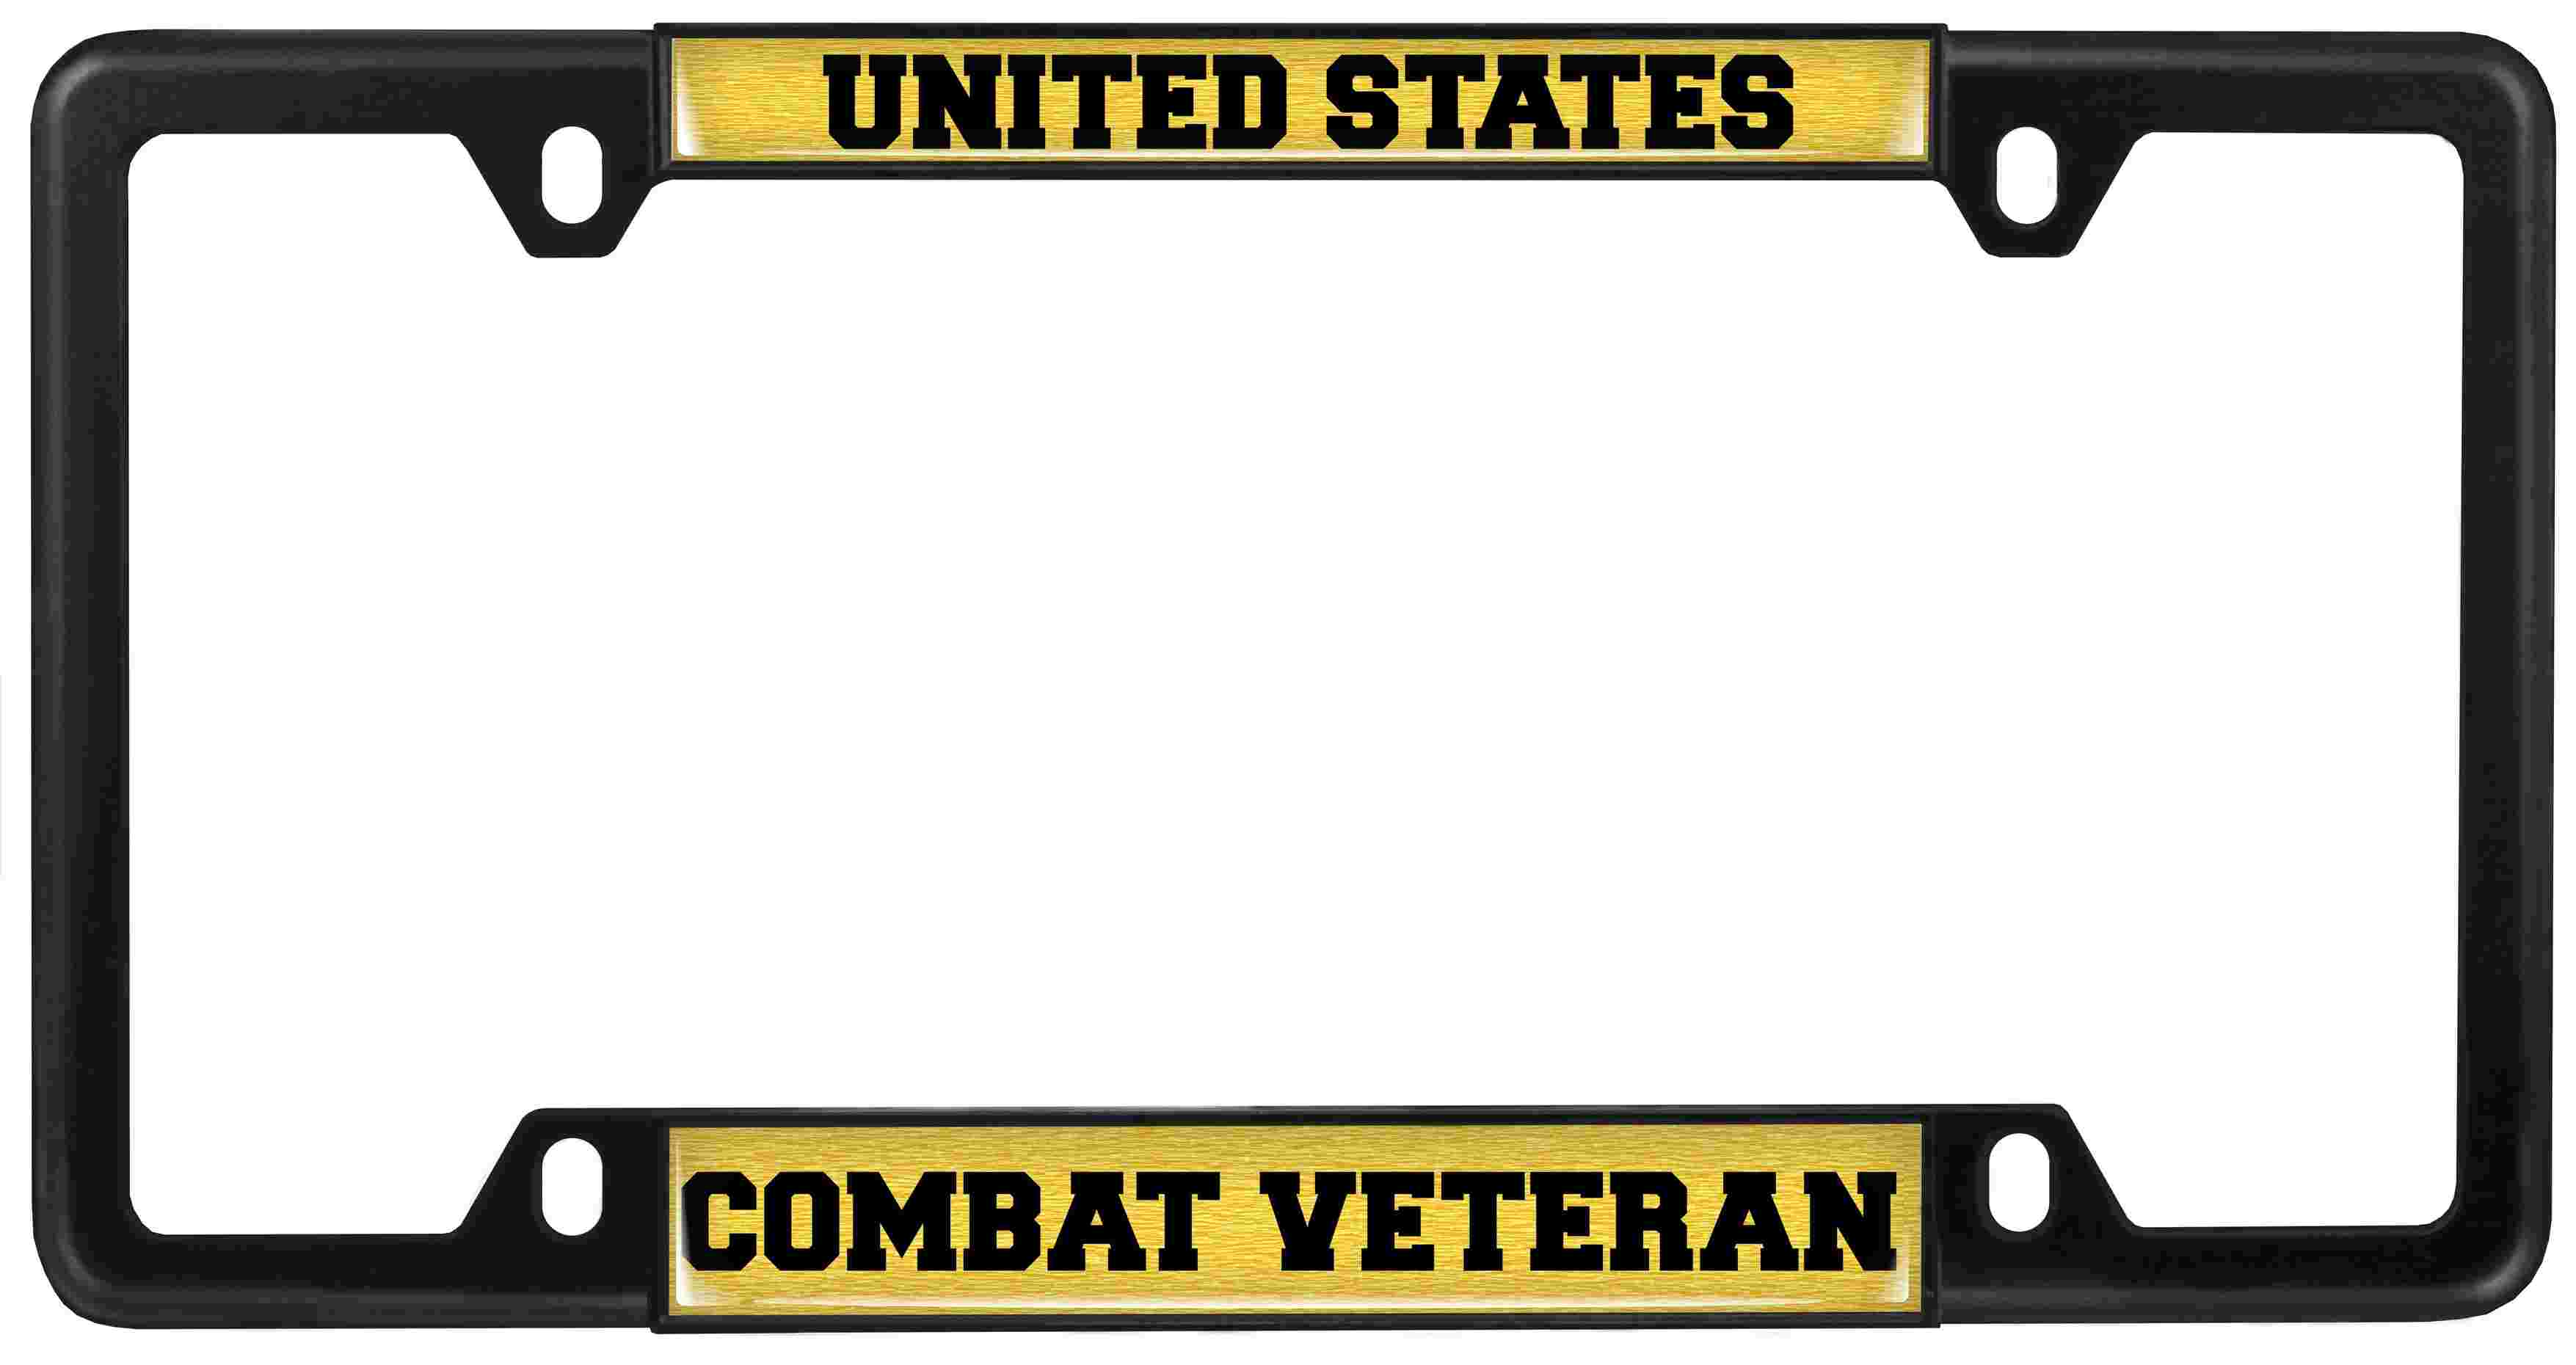 U.S. Combat Veteran - Car Metal License Plate Frame